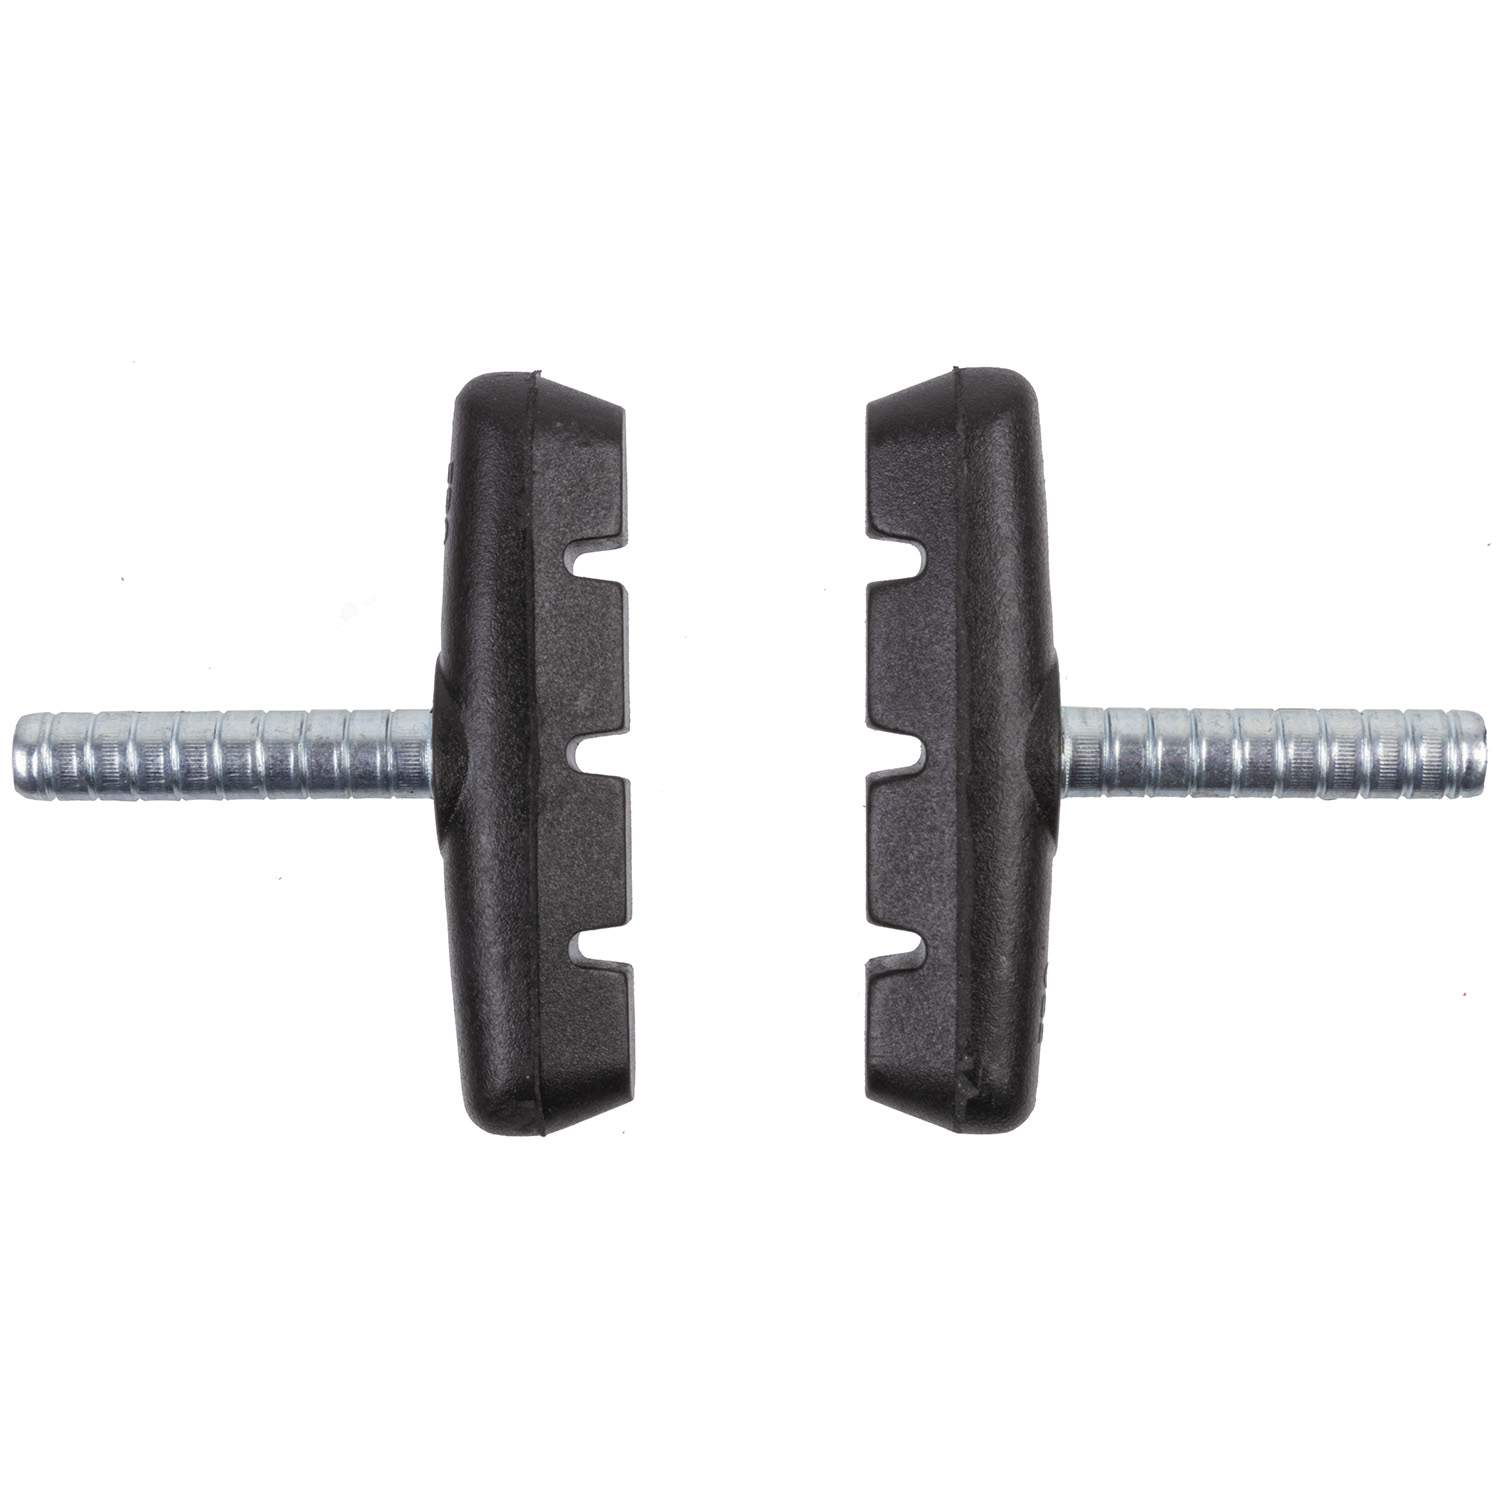 Bremsschuhe Cantilever nach ISO 4210, 1 Stück für ALU- und Stahl-Felge